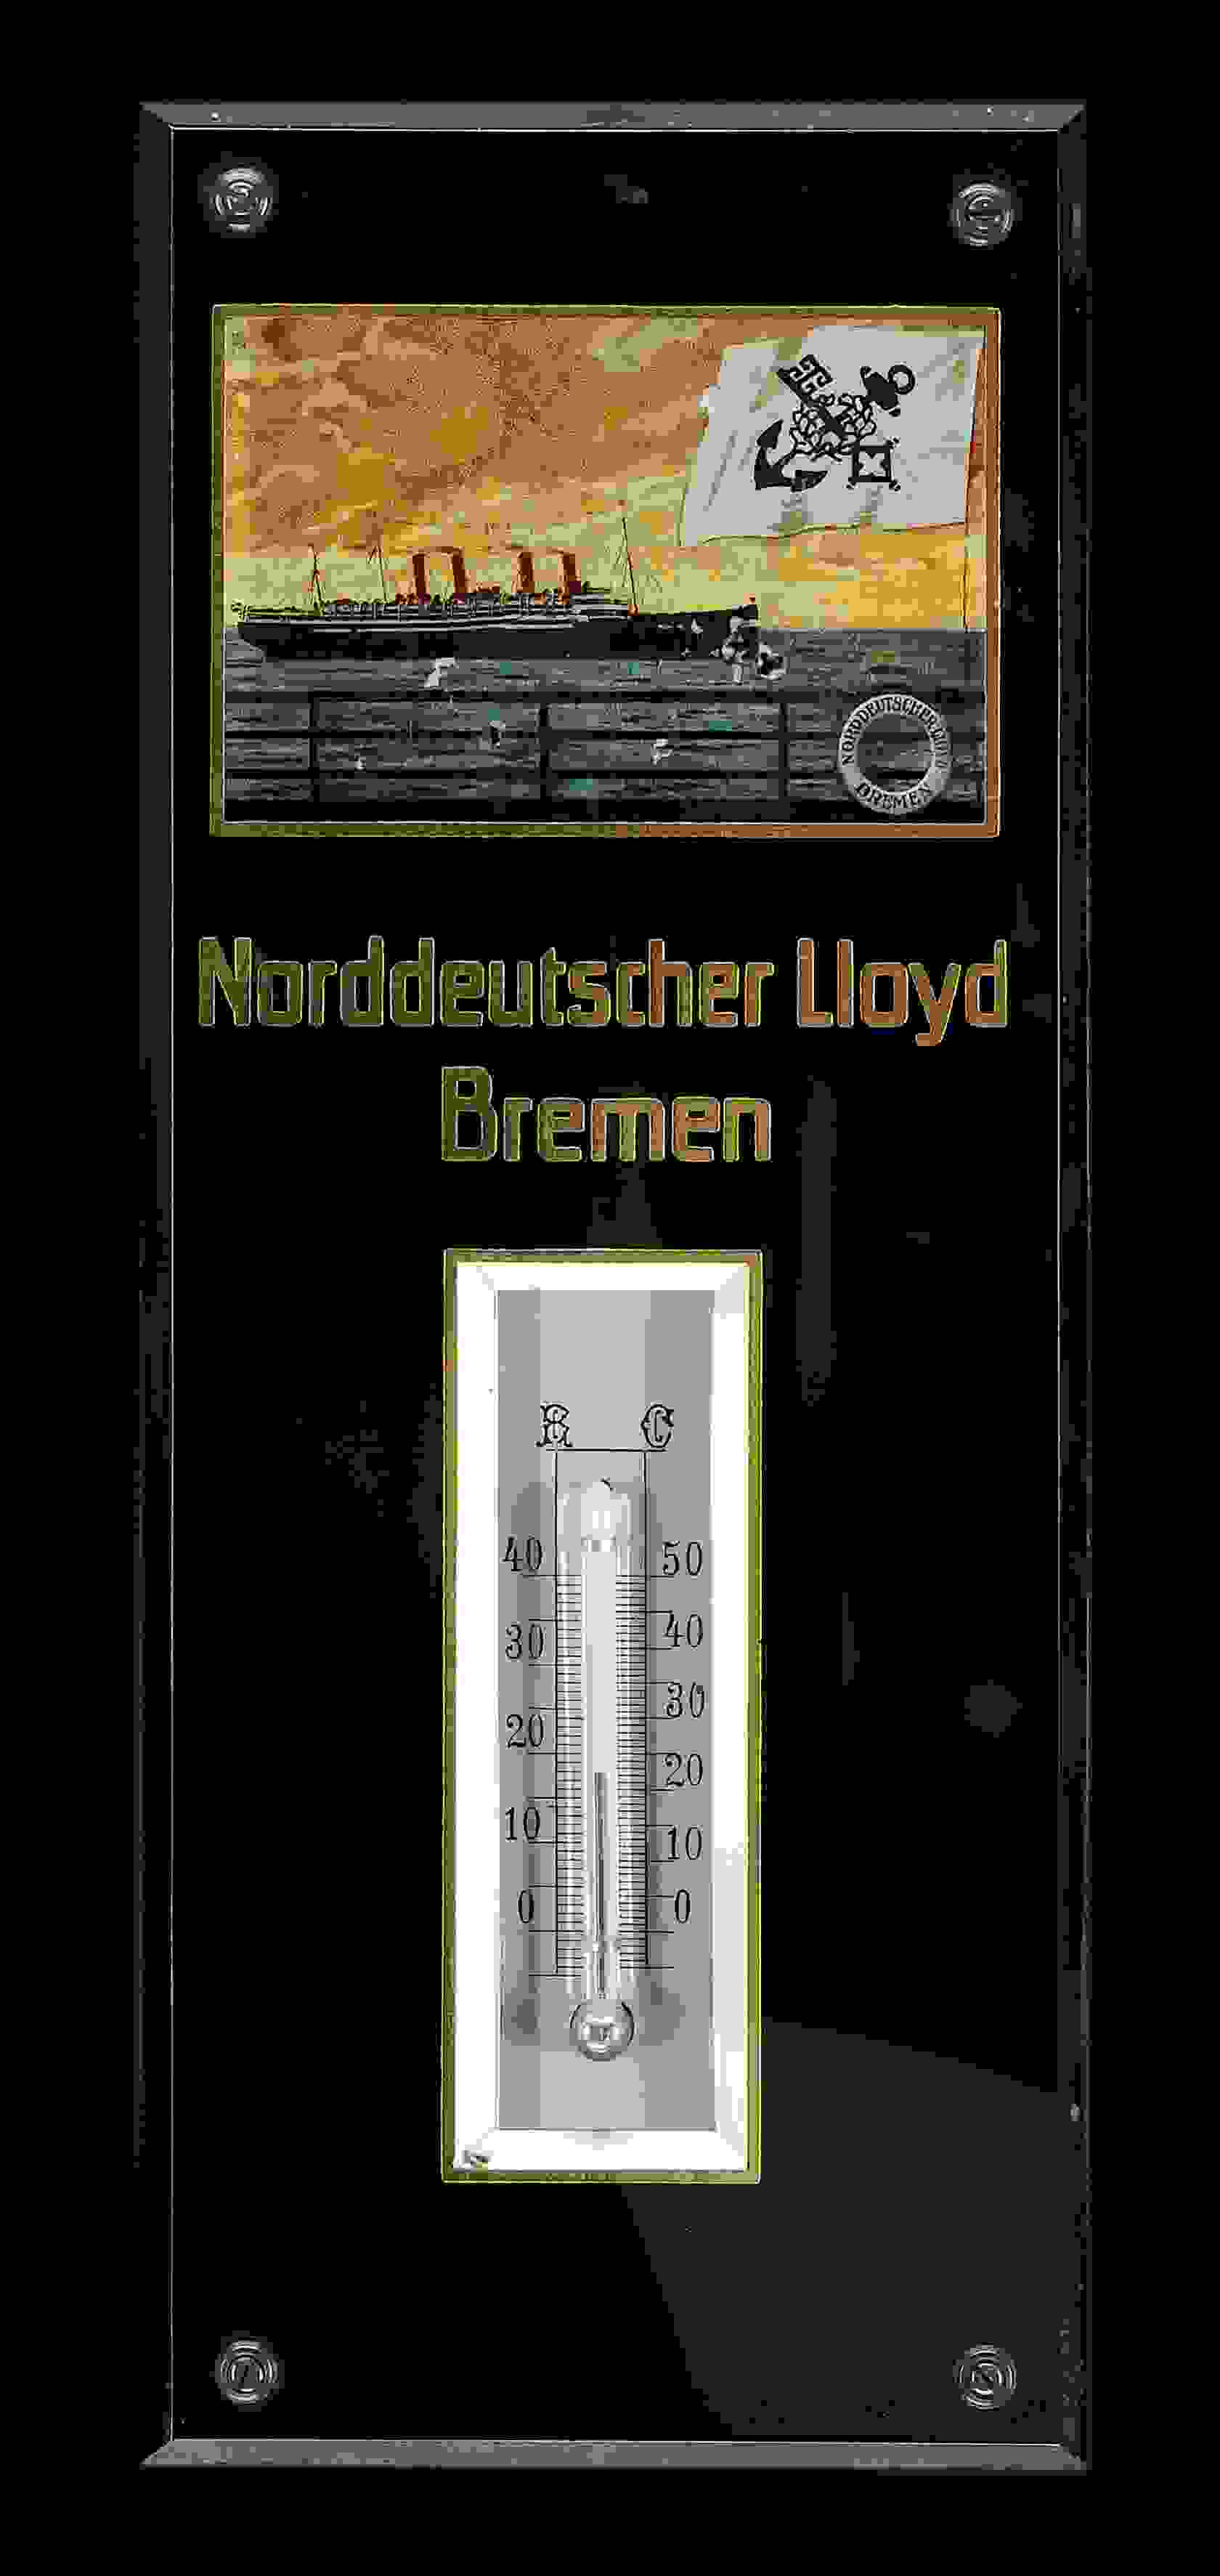 Norddeutscher Lloyd Bremen Thermometer 